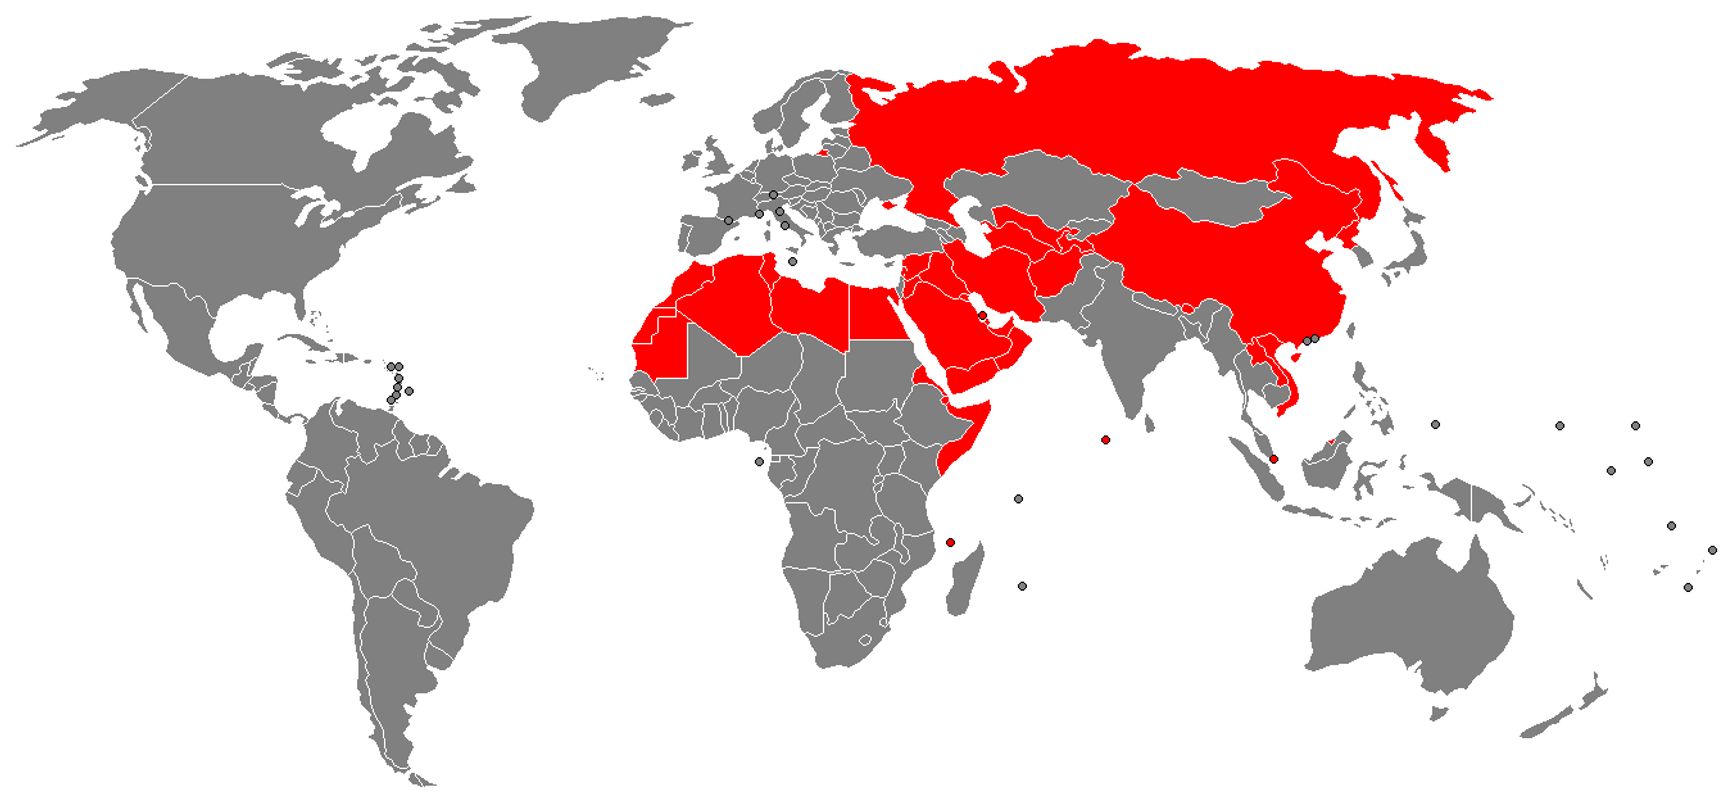 Красным цветом показаны страны, где деятельность «Свидетелей Иеговы» запрещена